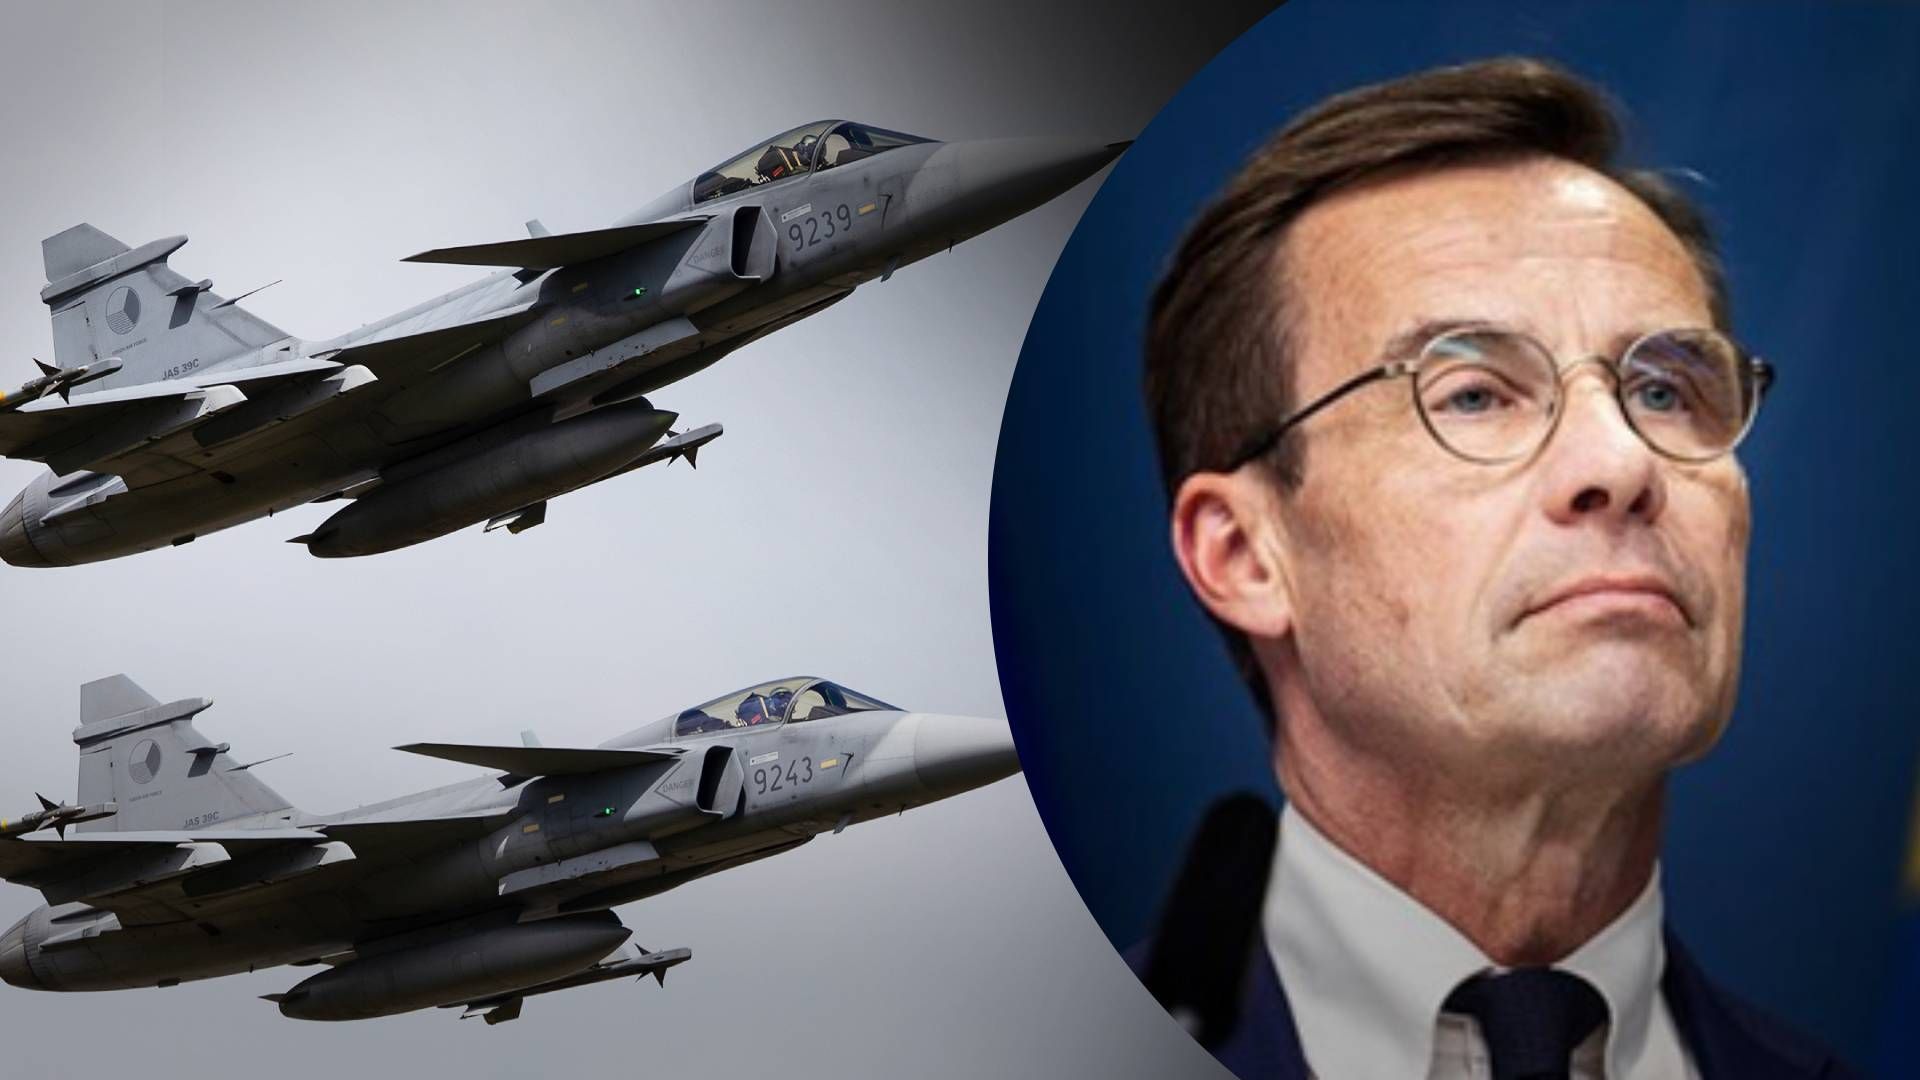 Швеция не может предоставить Gripen из Украины, - премьер Швеции - 24 Канал